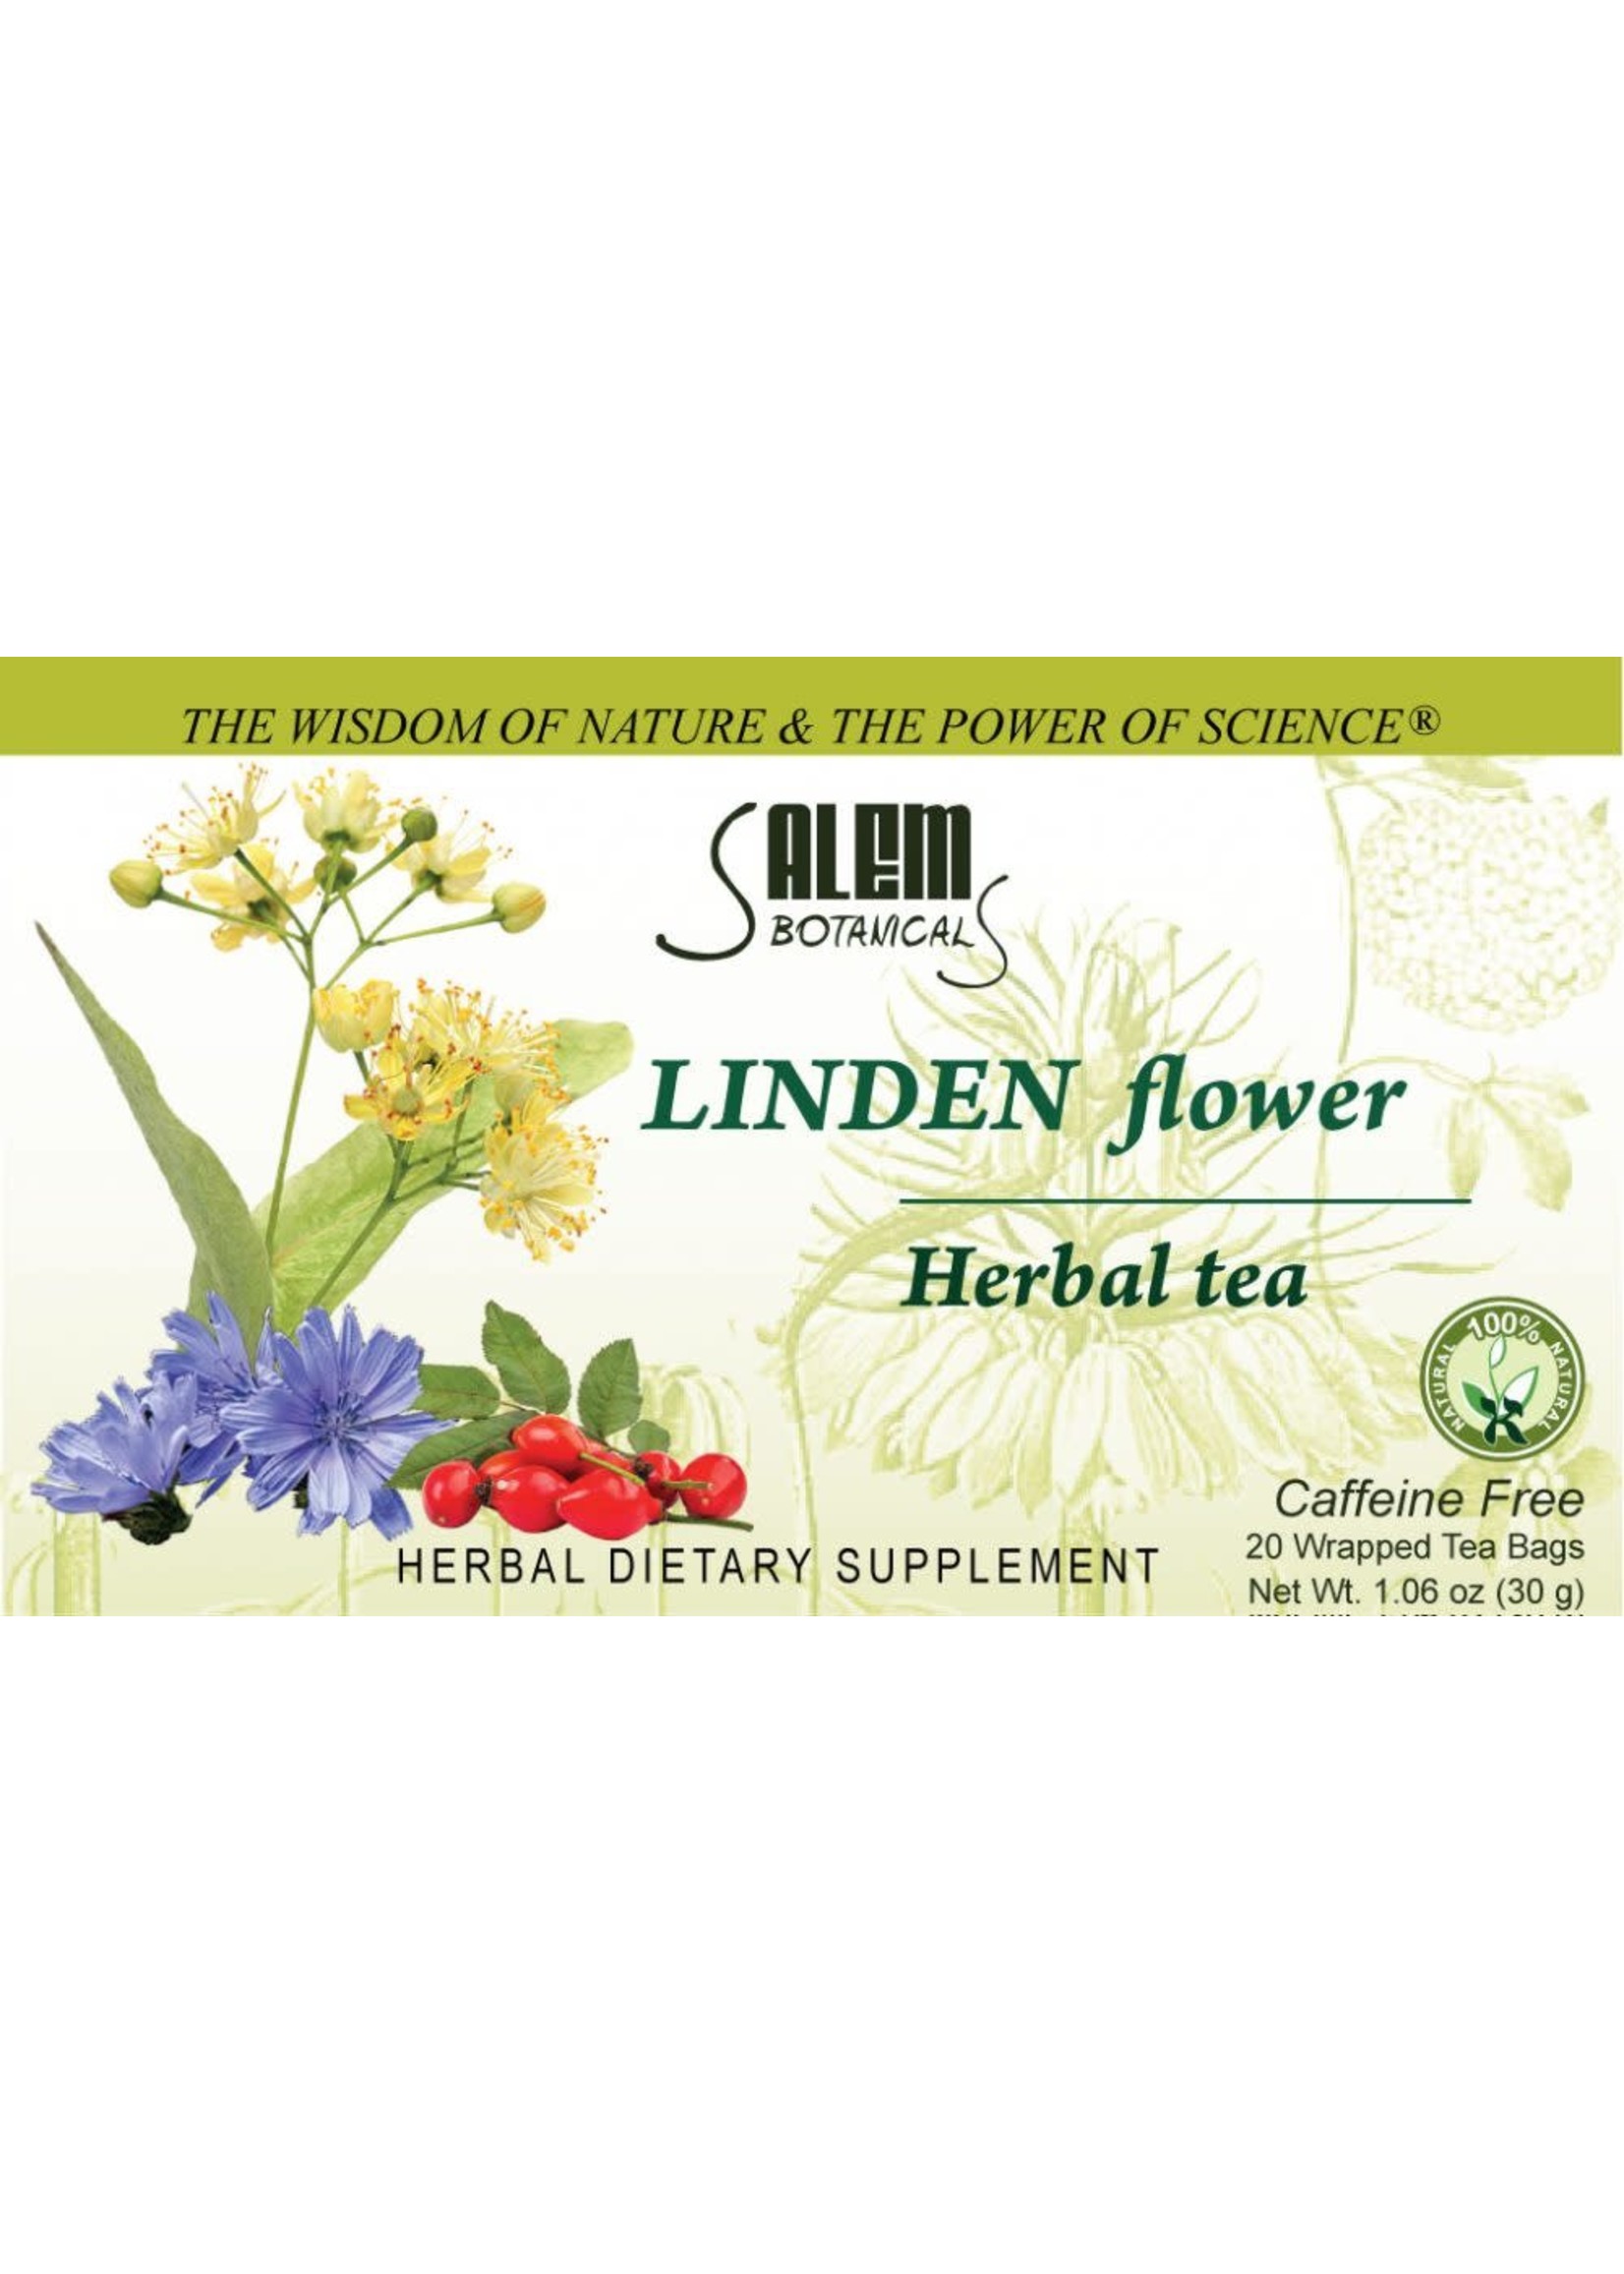 Salem Botanical Herbal Tea, Linden Flower